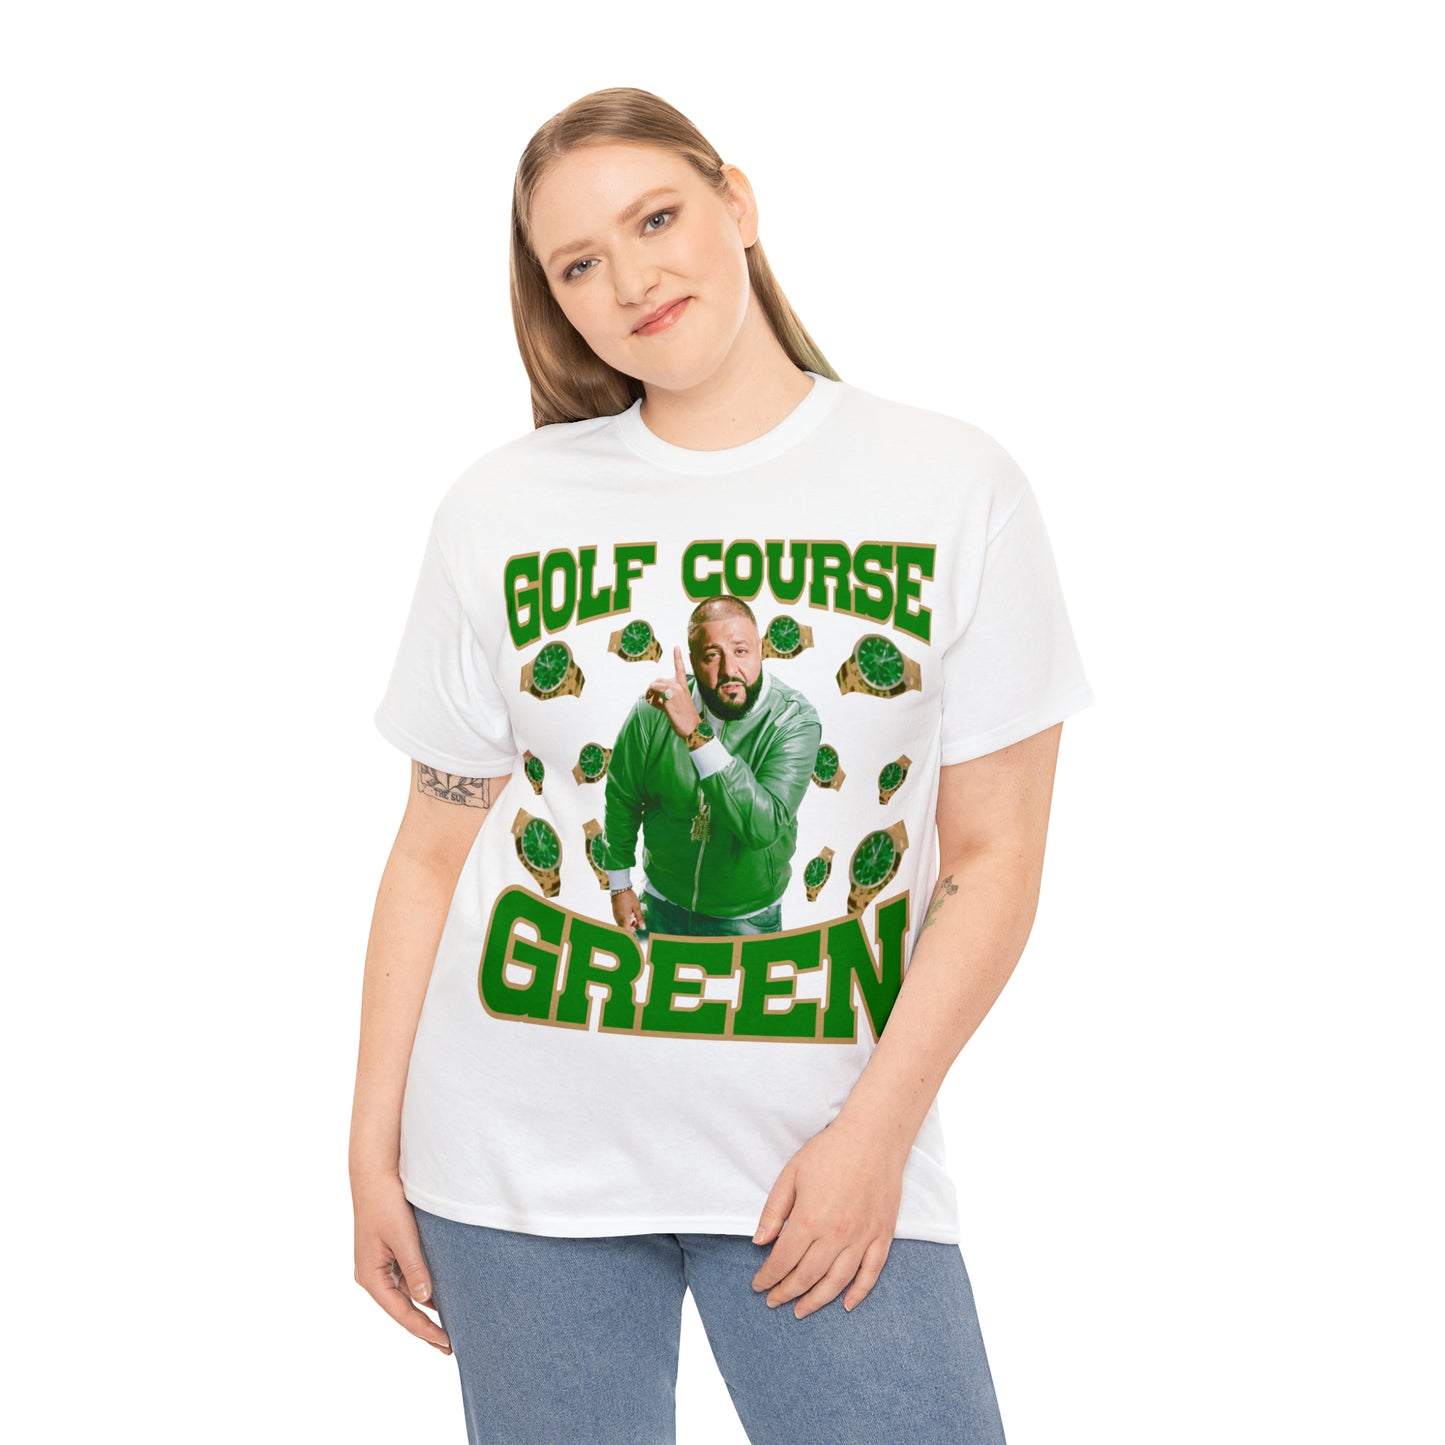 GOLF COURSE GREEN